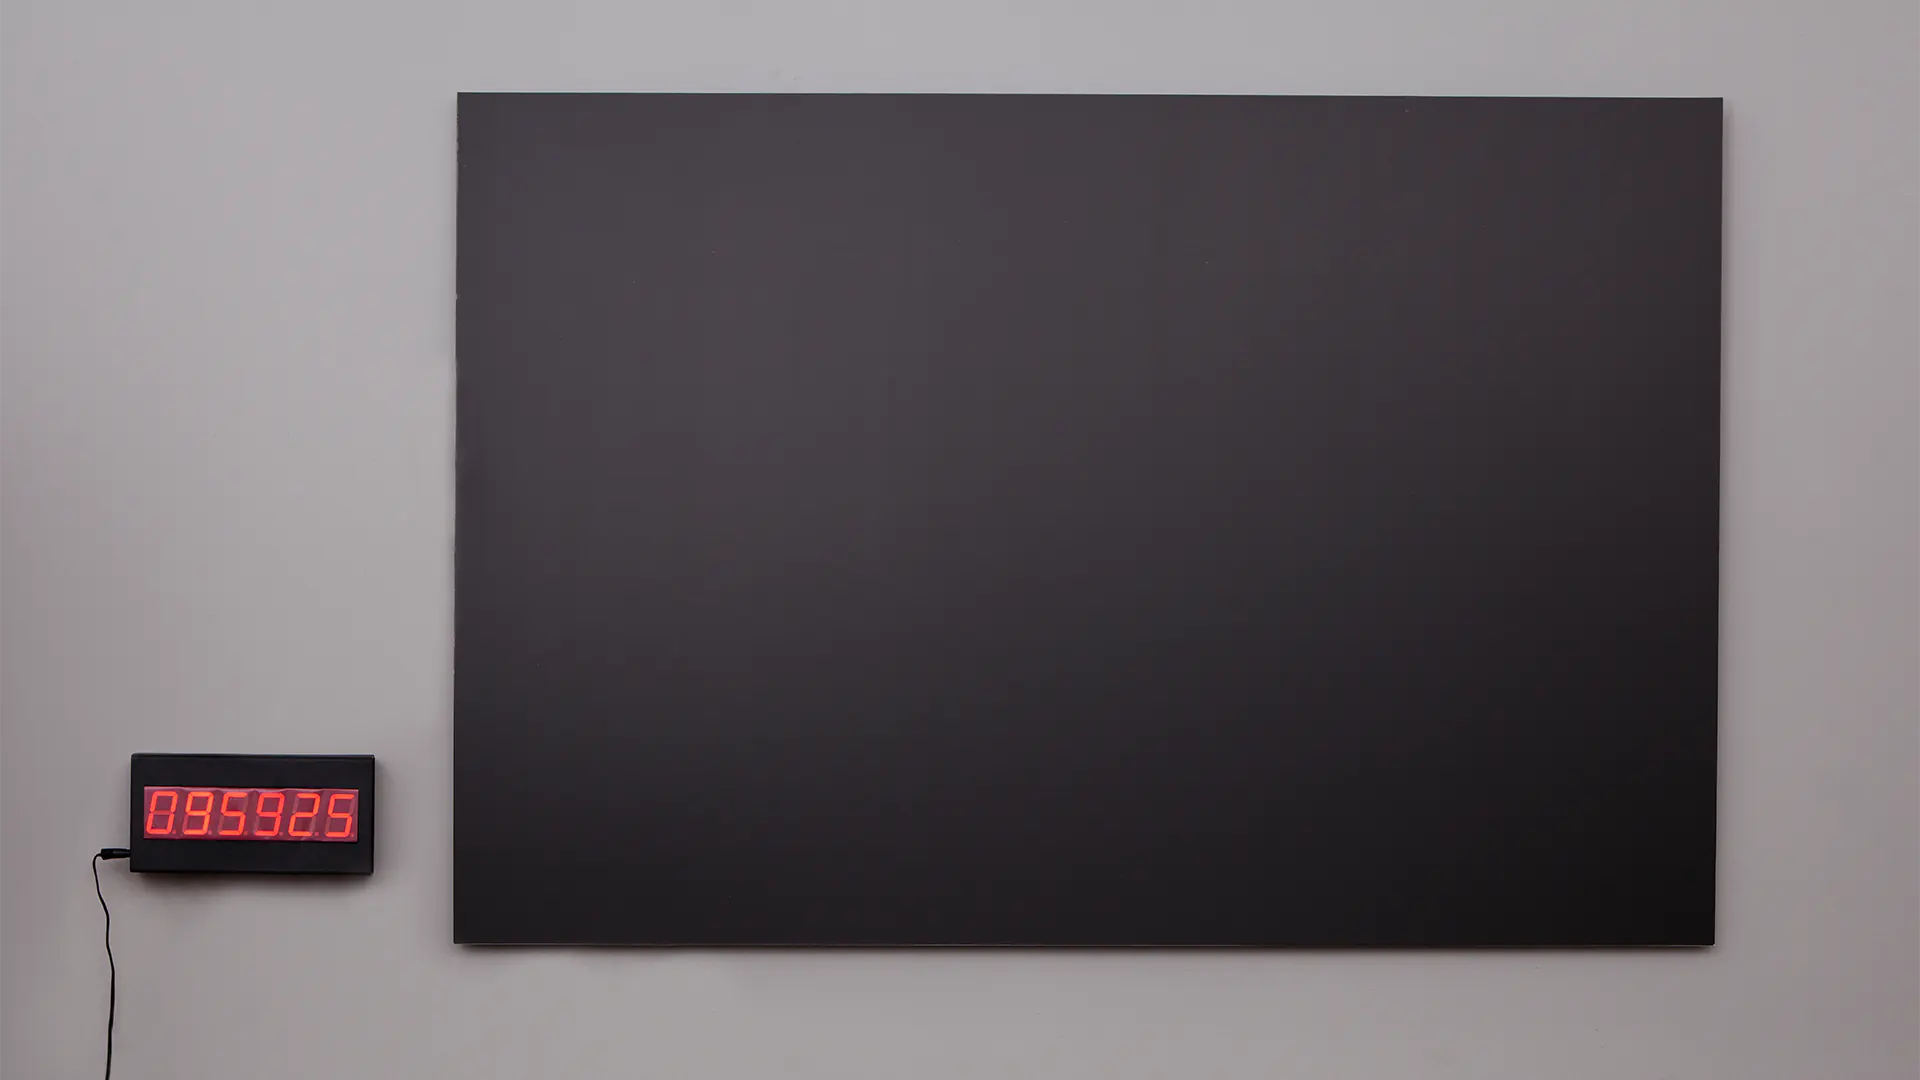 A Fekete lyuk című installáció egy üres, fekete képből és egy digitális számlálóból áll